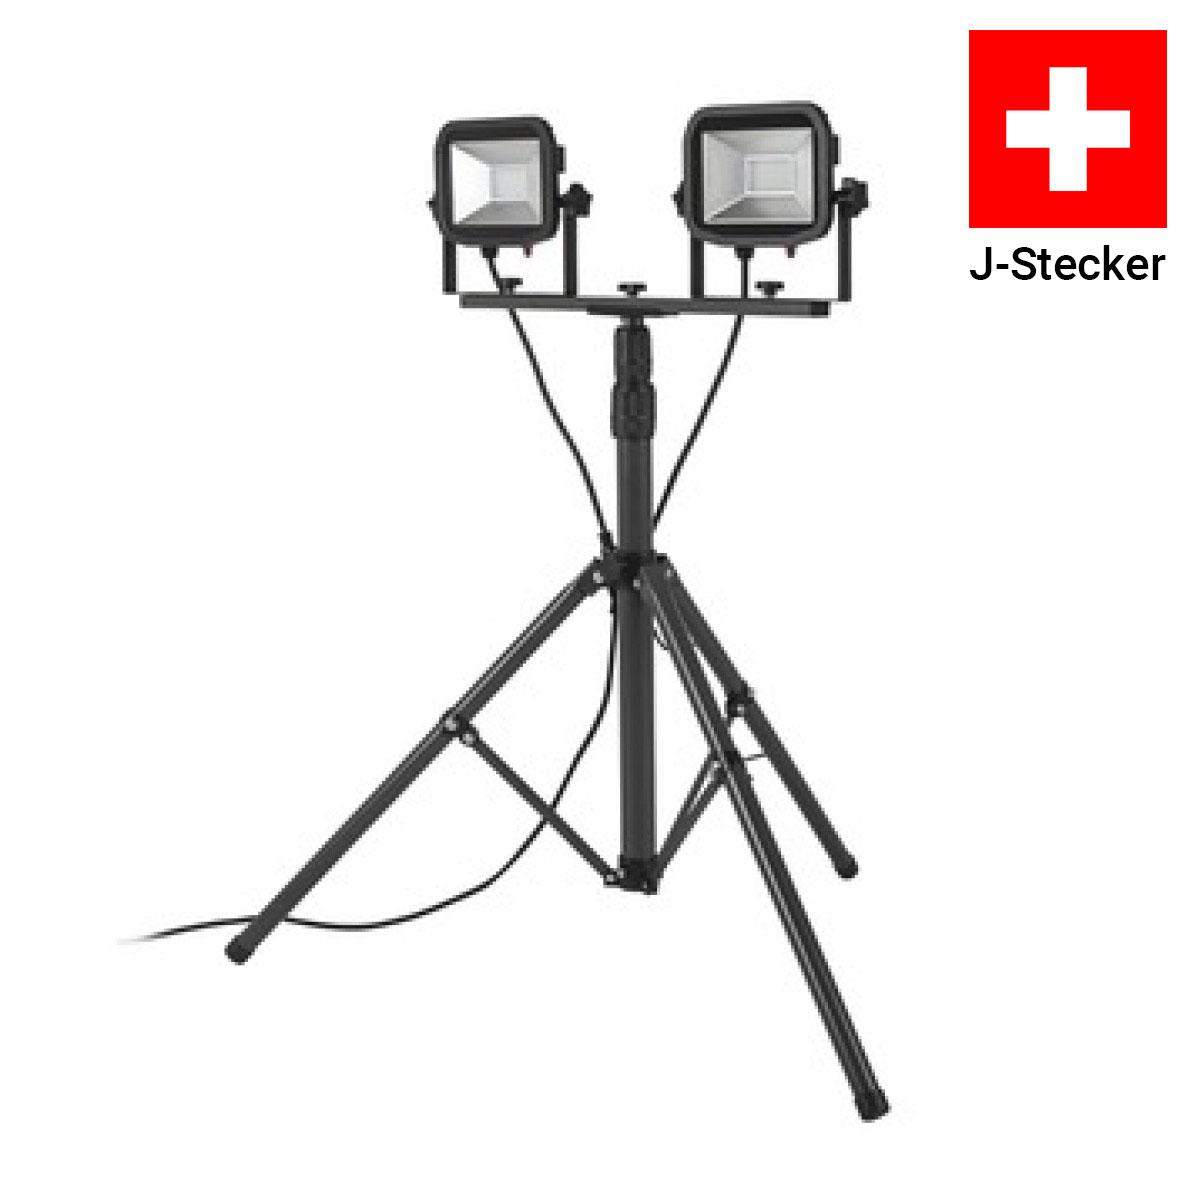 Luceco LED Strahler Stativ IP65 2x22W 2x1800lm Schweizer J-Stecker 5000K kaltweiß schwarz/grau